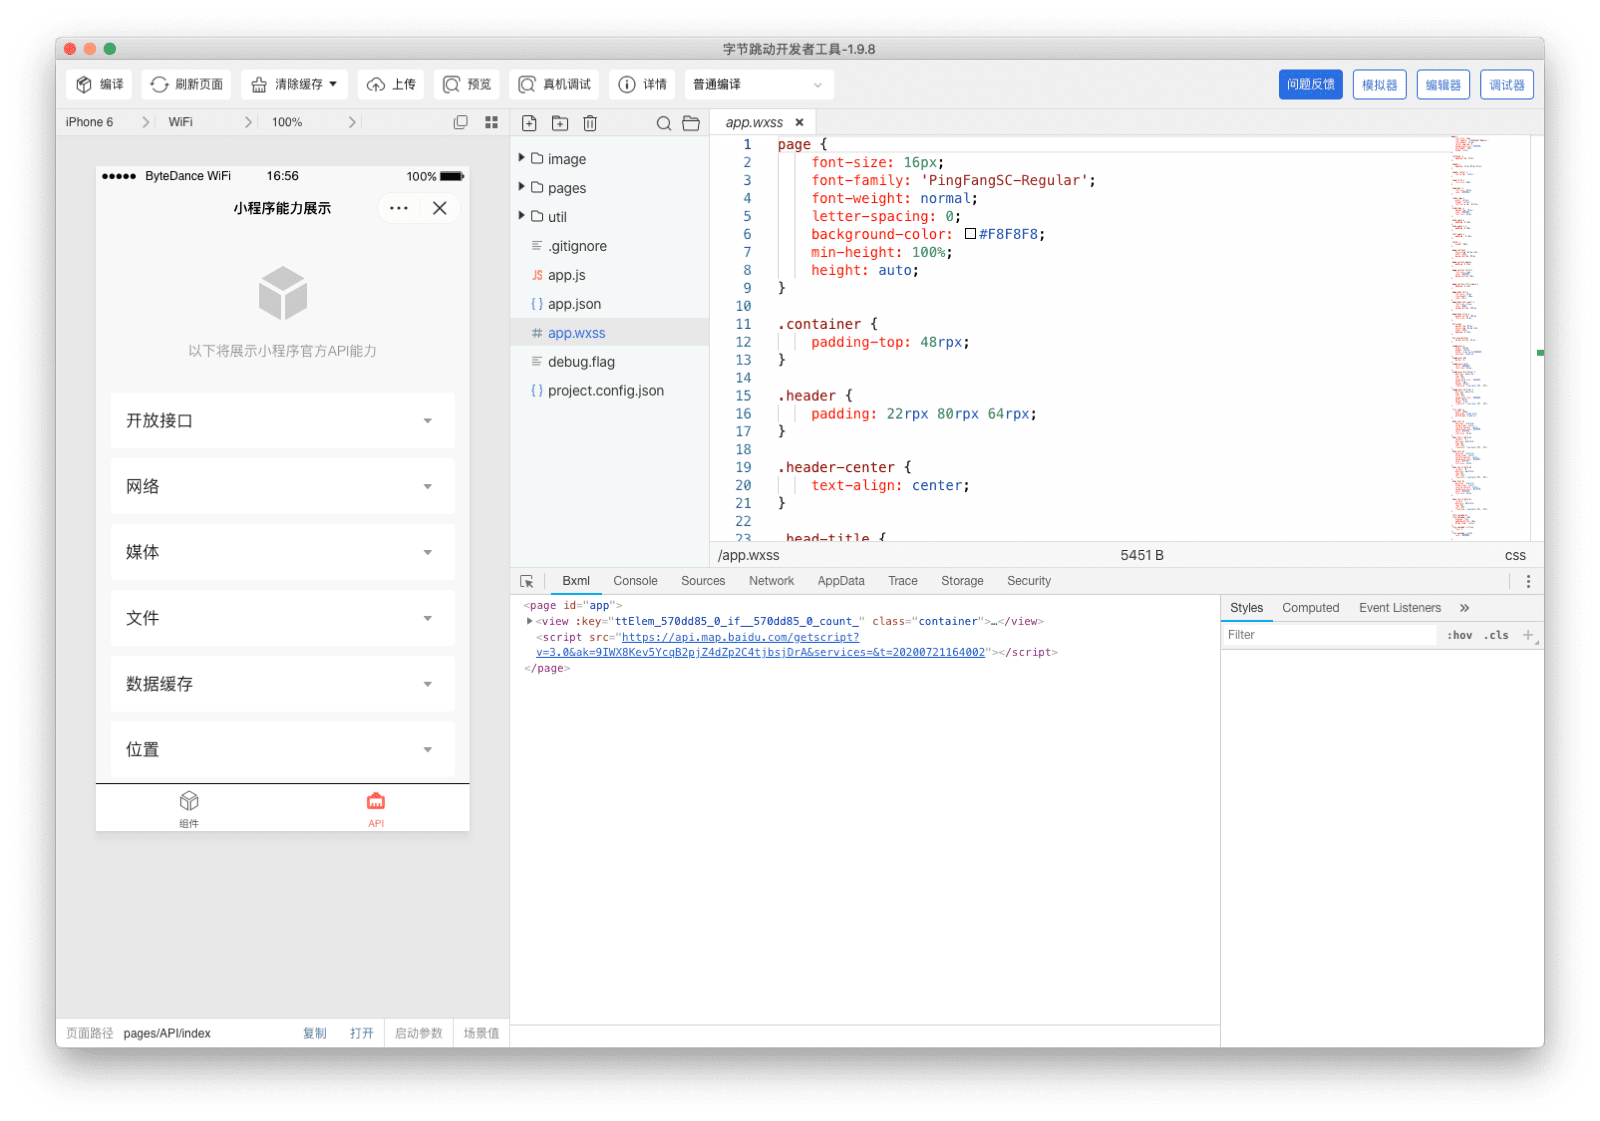 Окно приложения ByteDance DevTools, показывающее симулятор, редактор кода и отладчик.